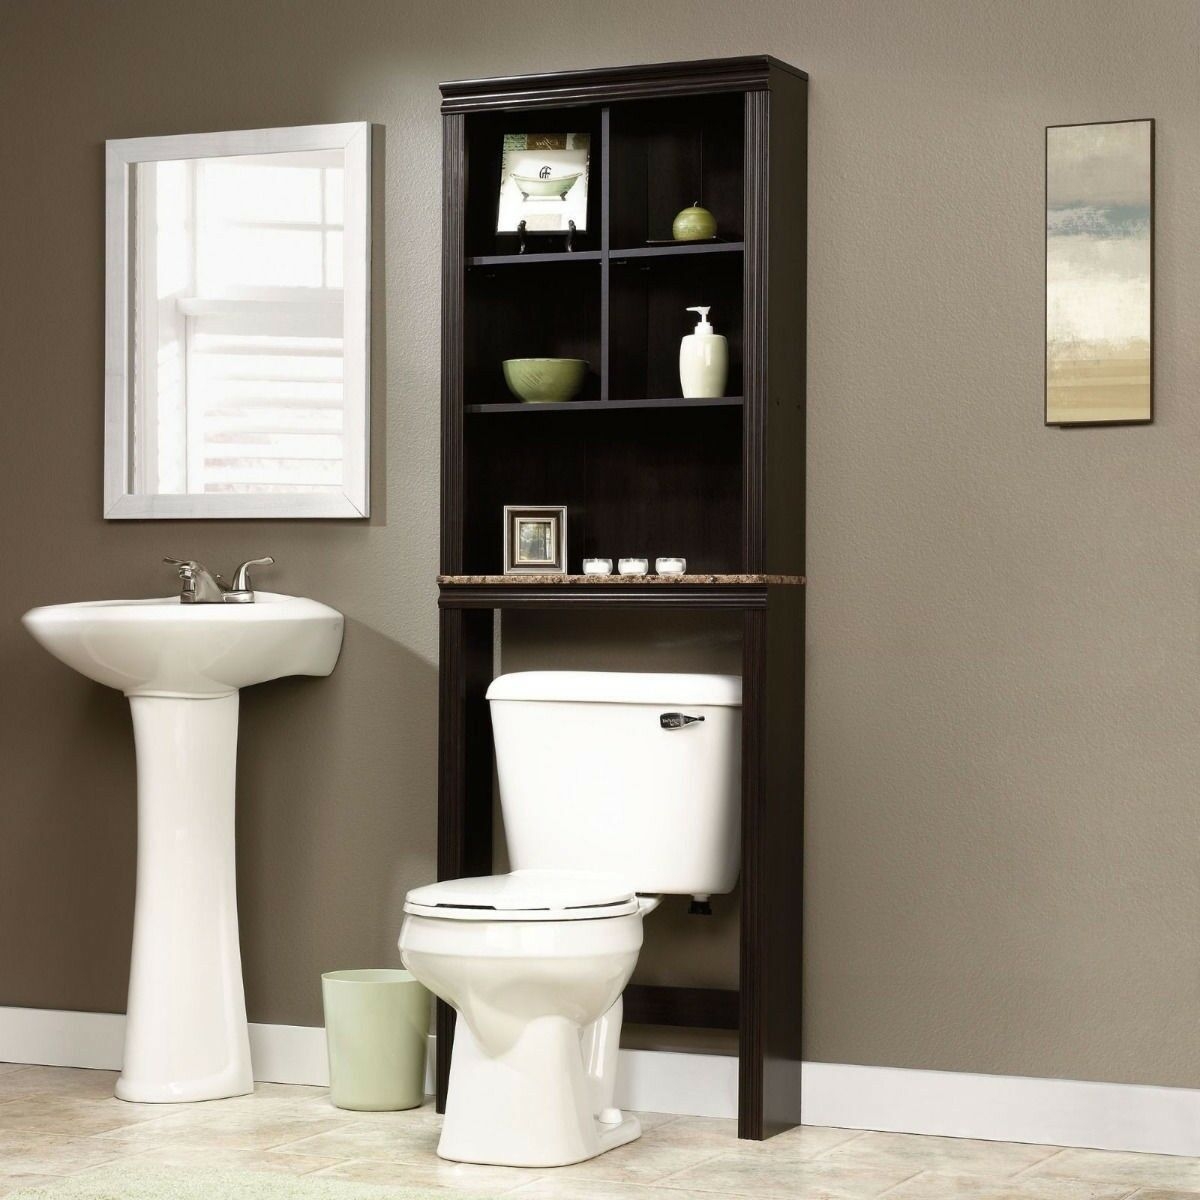 49*25*160cm Bathroom Shelves White Toilet Shelf Cabinet Toilet Shelf with 3 Shelves 